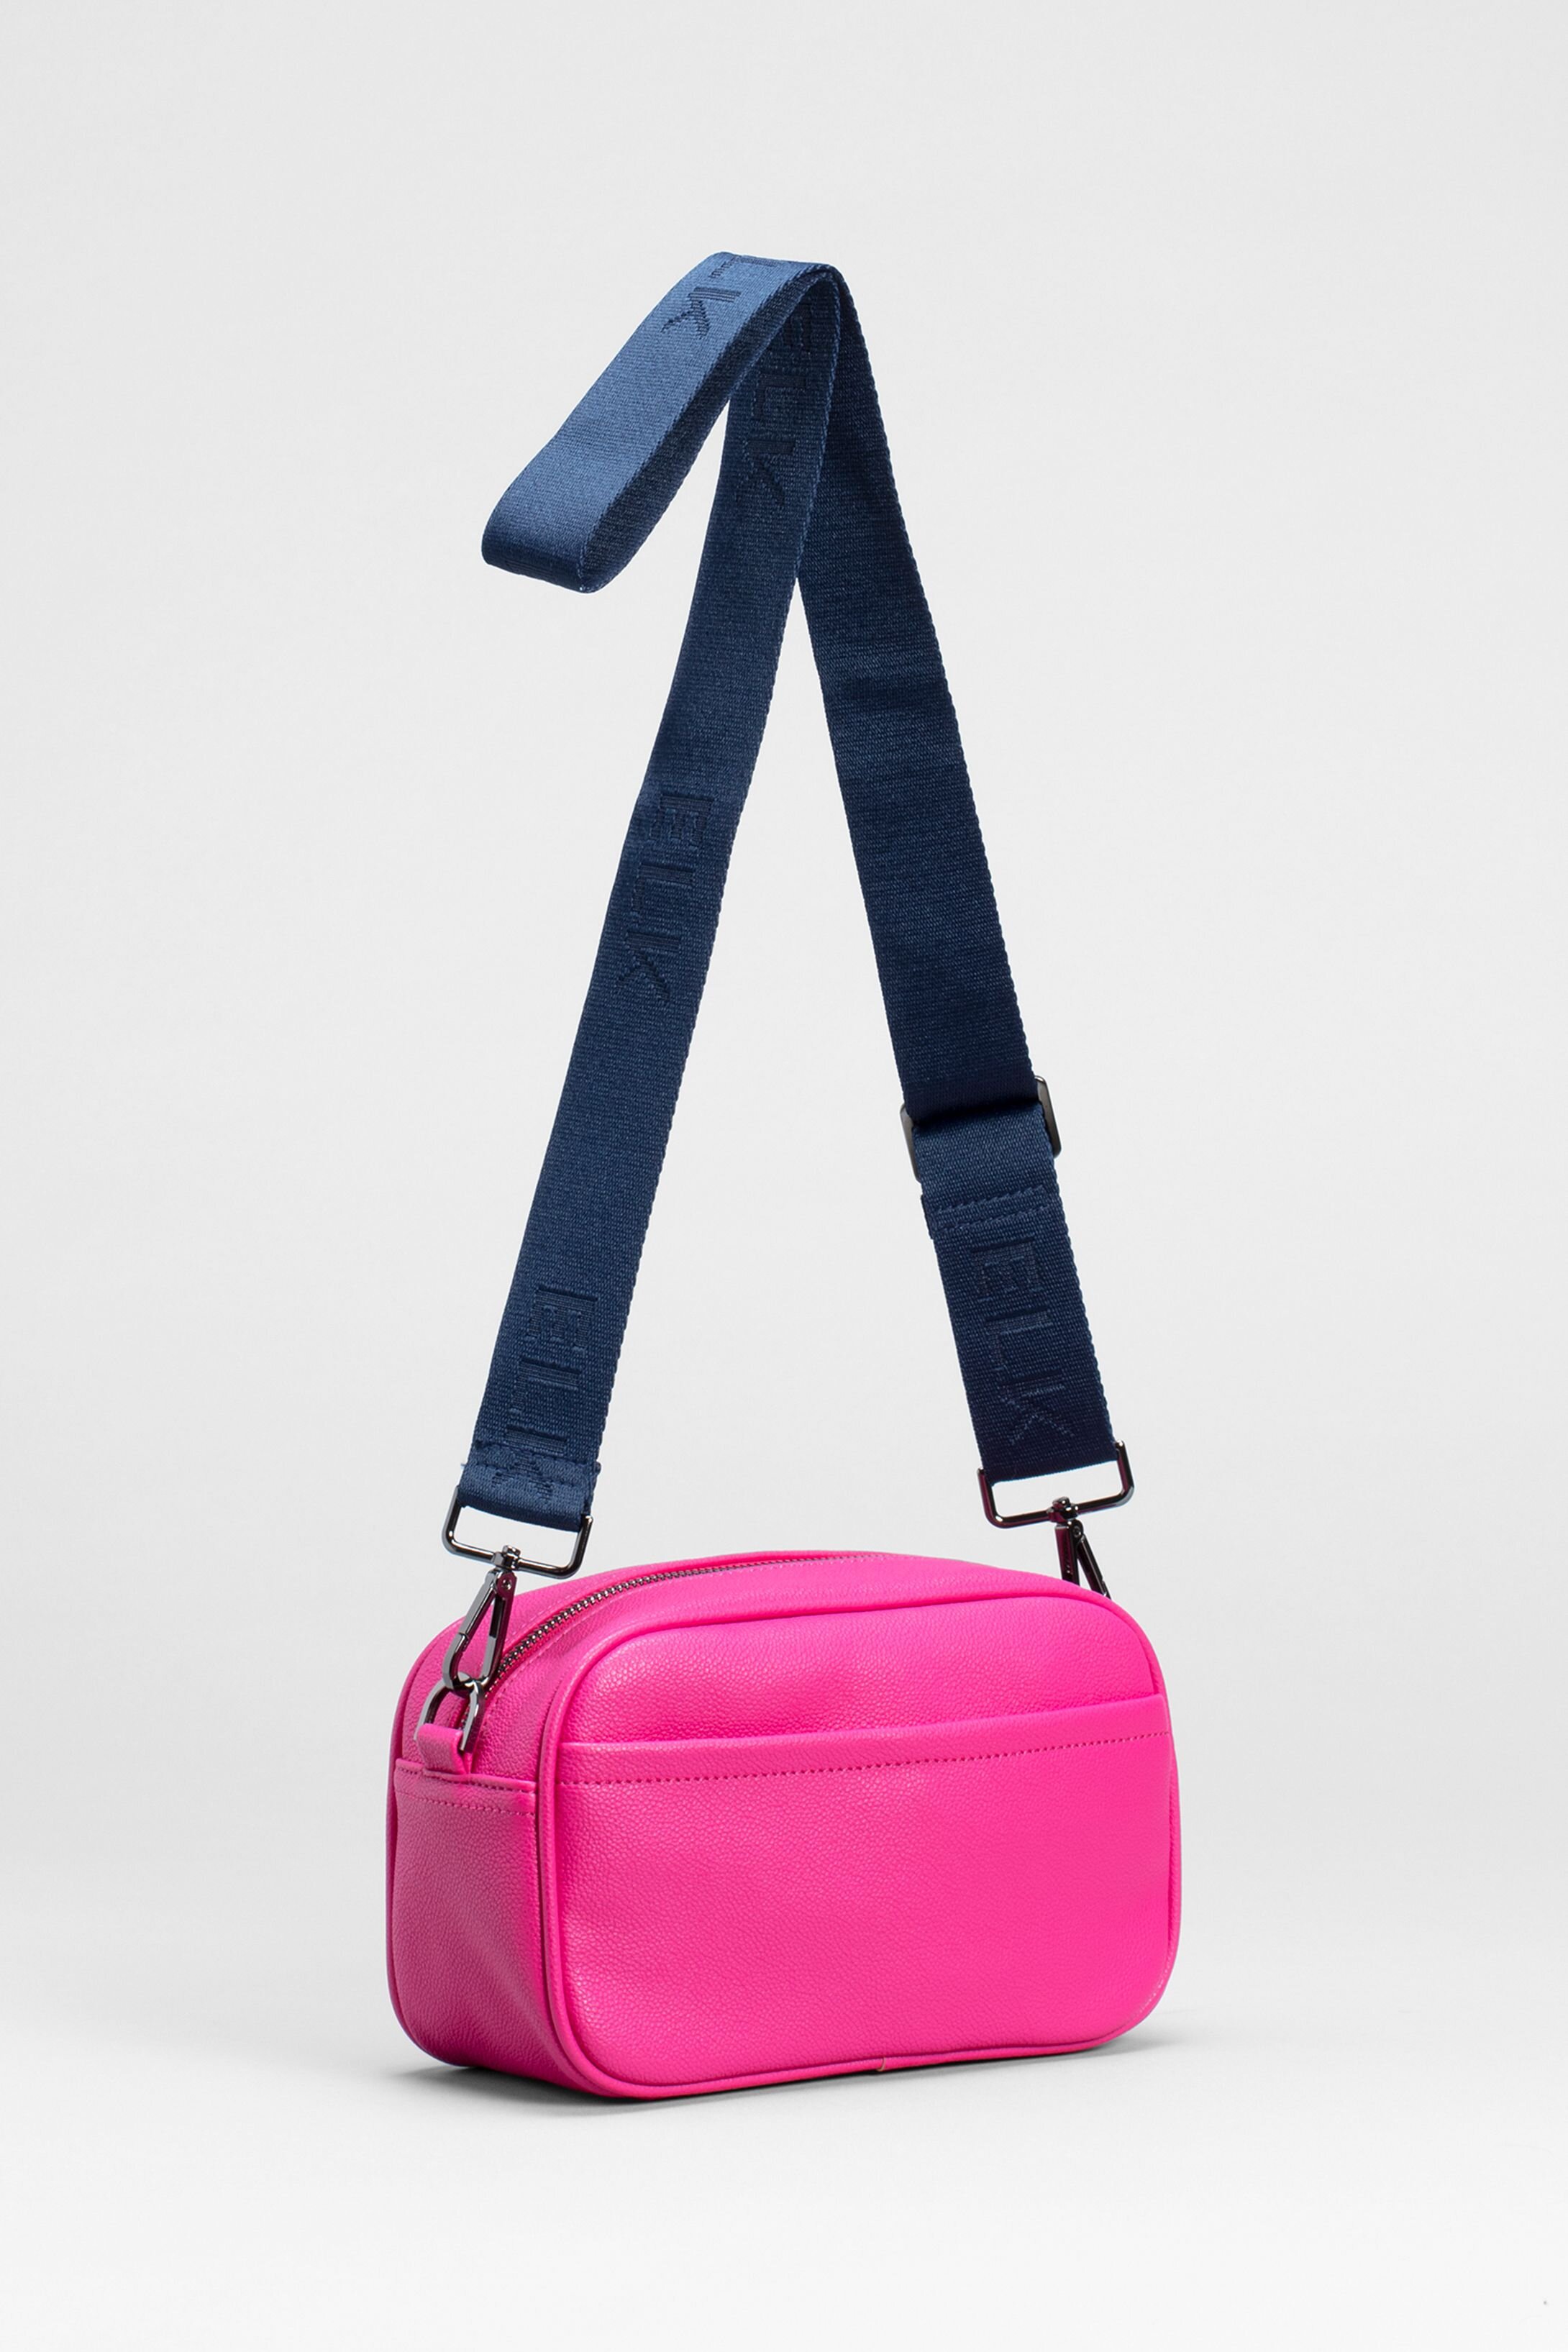 Kassel Mini Bag (Pink) - Accessories-Bags / Wallets : Just Looking ...